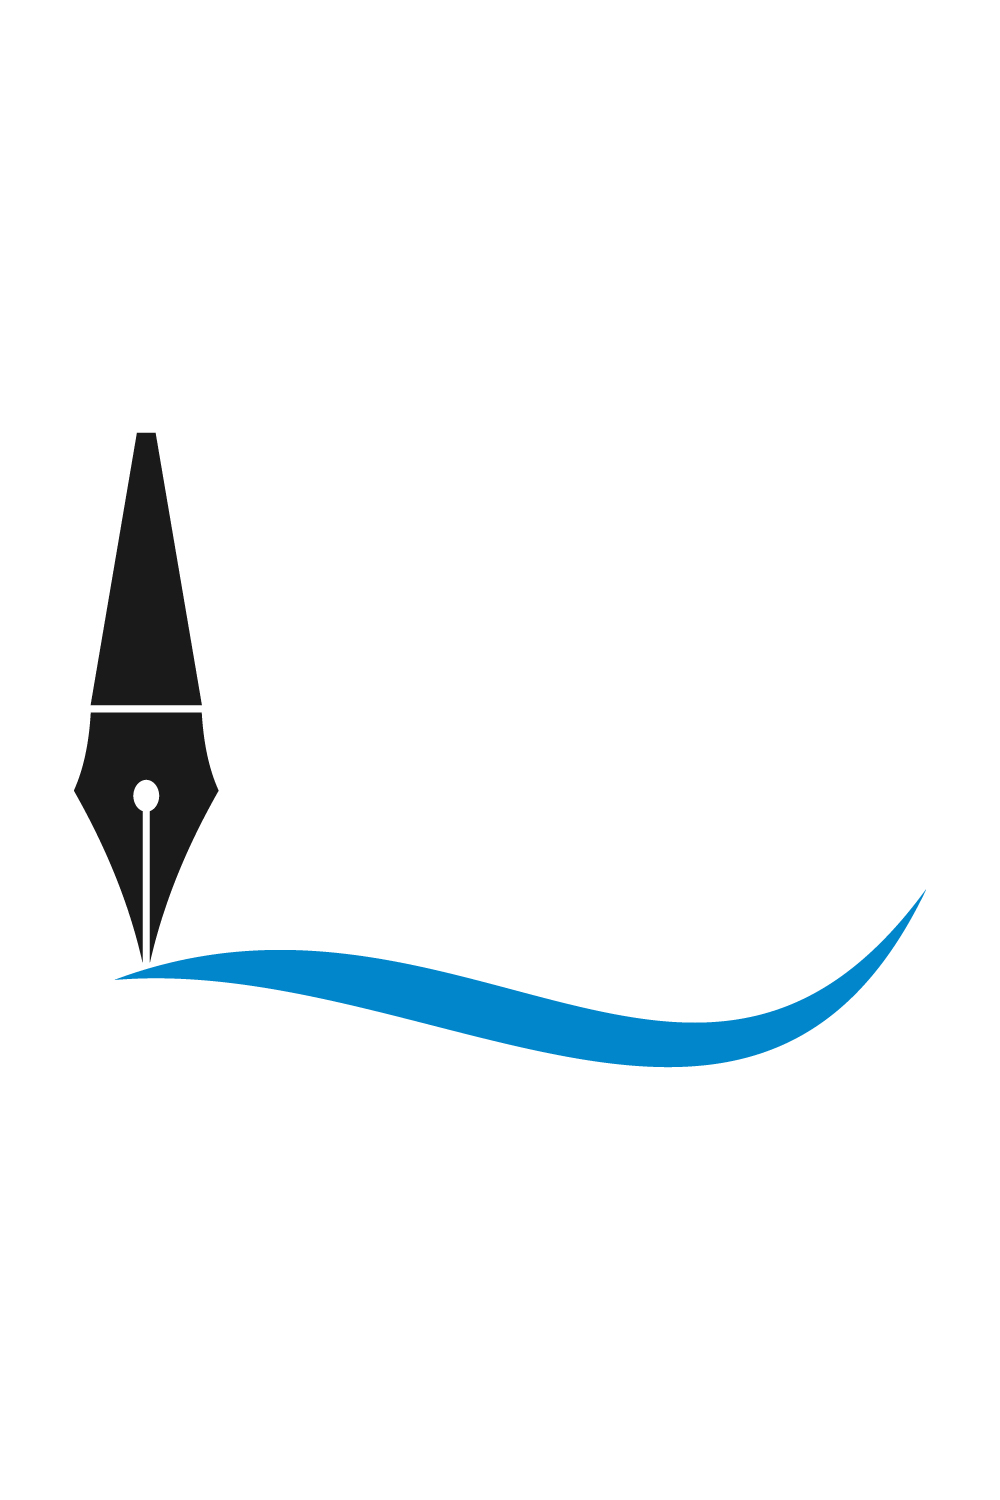 Fountain writing pen logo design, Vector design concept pinterest preview image.